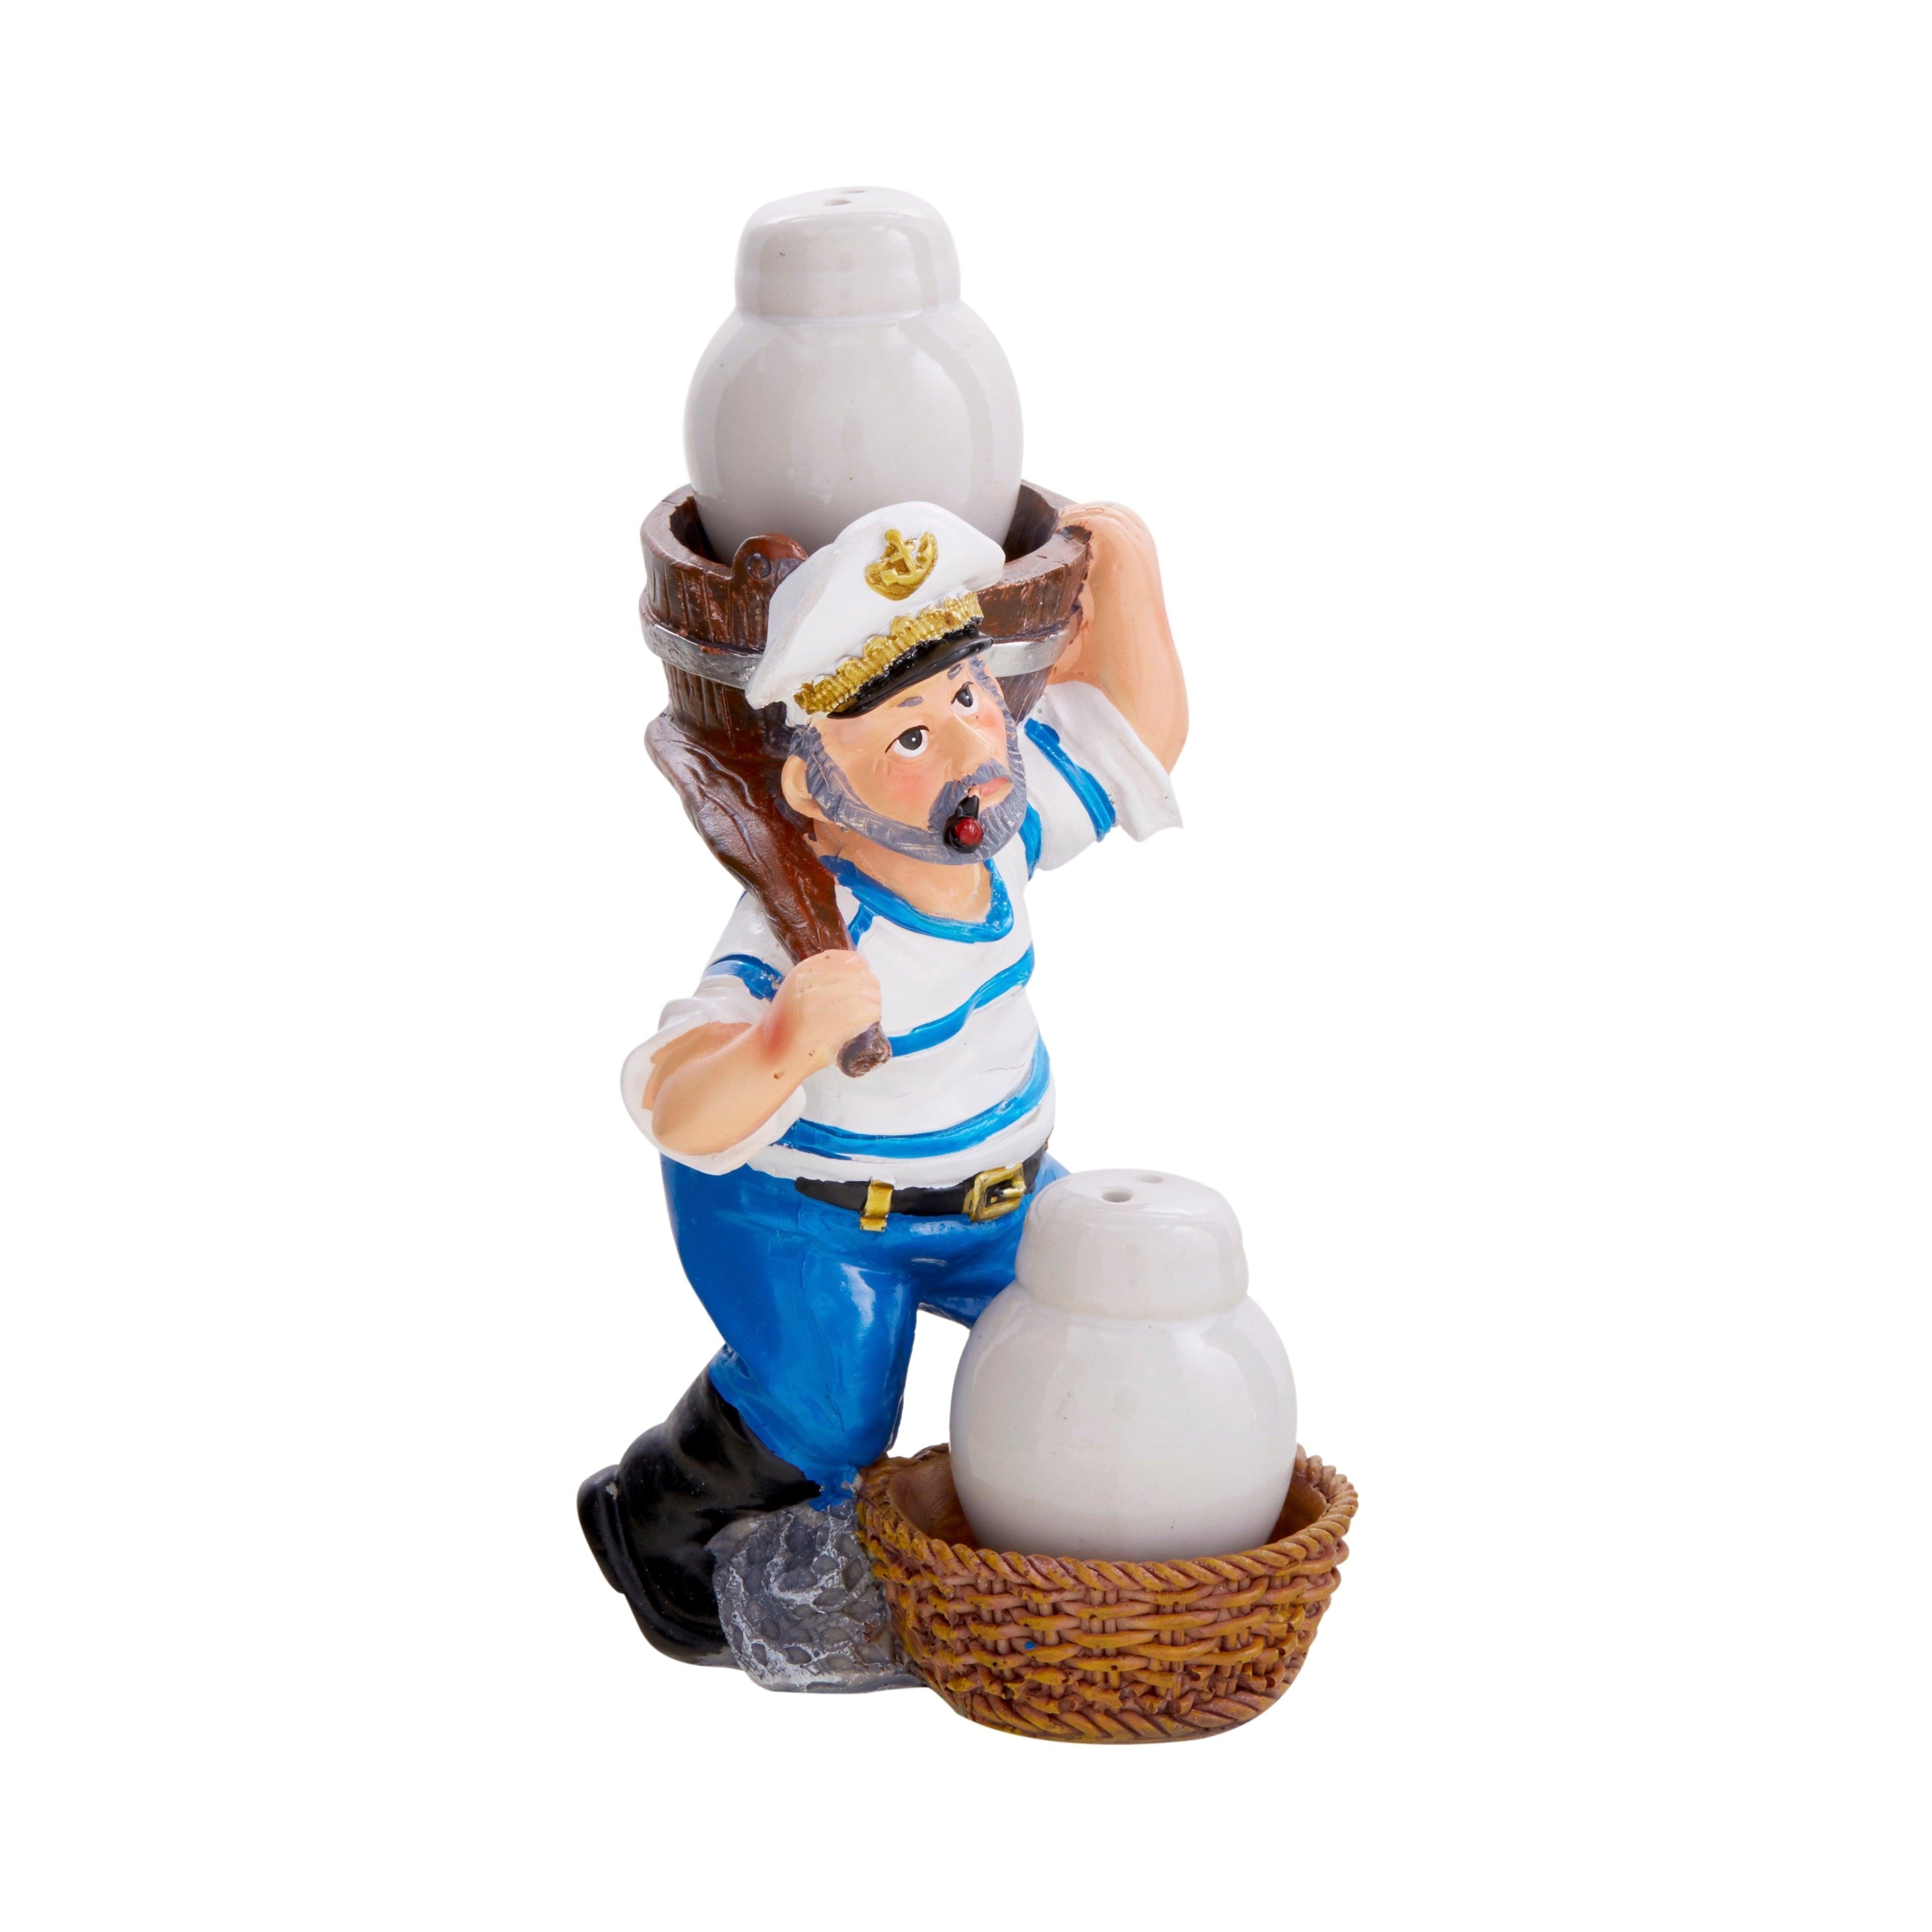 Natucal Sailor Figurine Resin Salt & Pepper Shakers Holder Set (White)